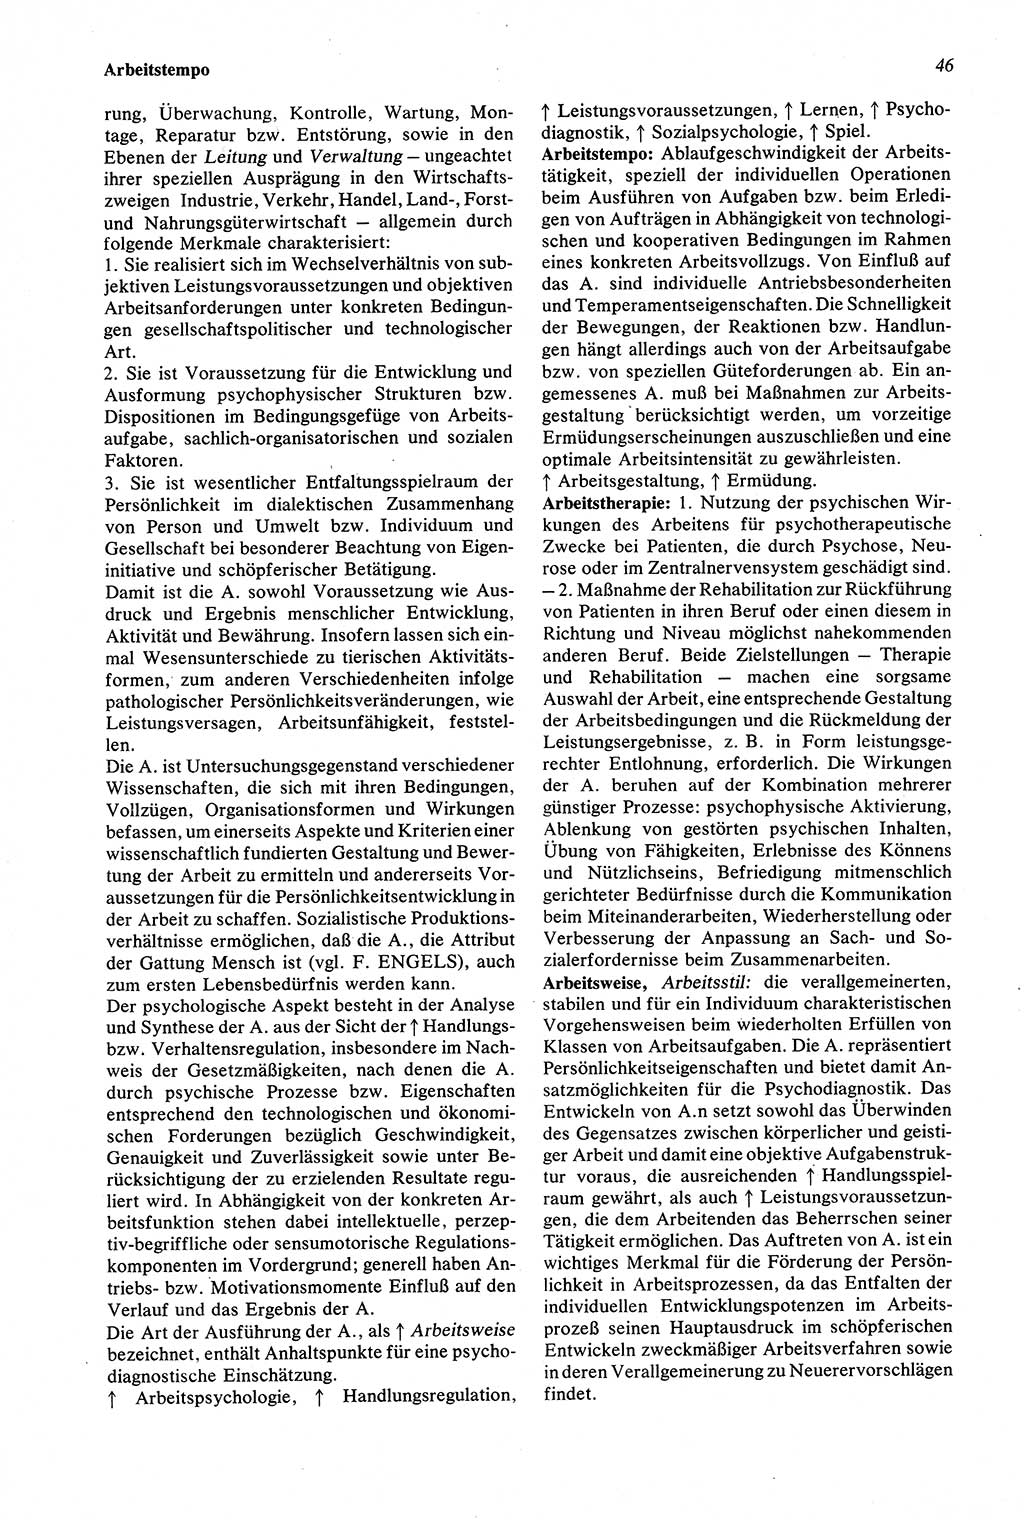 Wörterbuch der Psychologie [Deutsche Demokratische Republik (DDR)] 1976, Seite 46 (Wb. Psych. DDR 1976, S. 46)